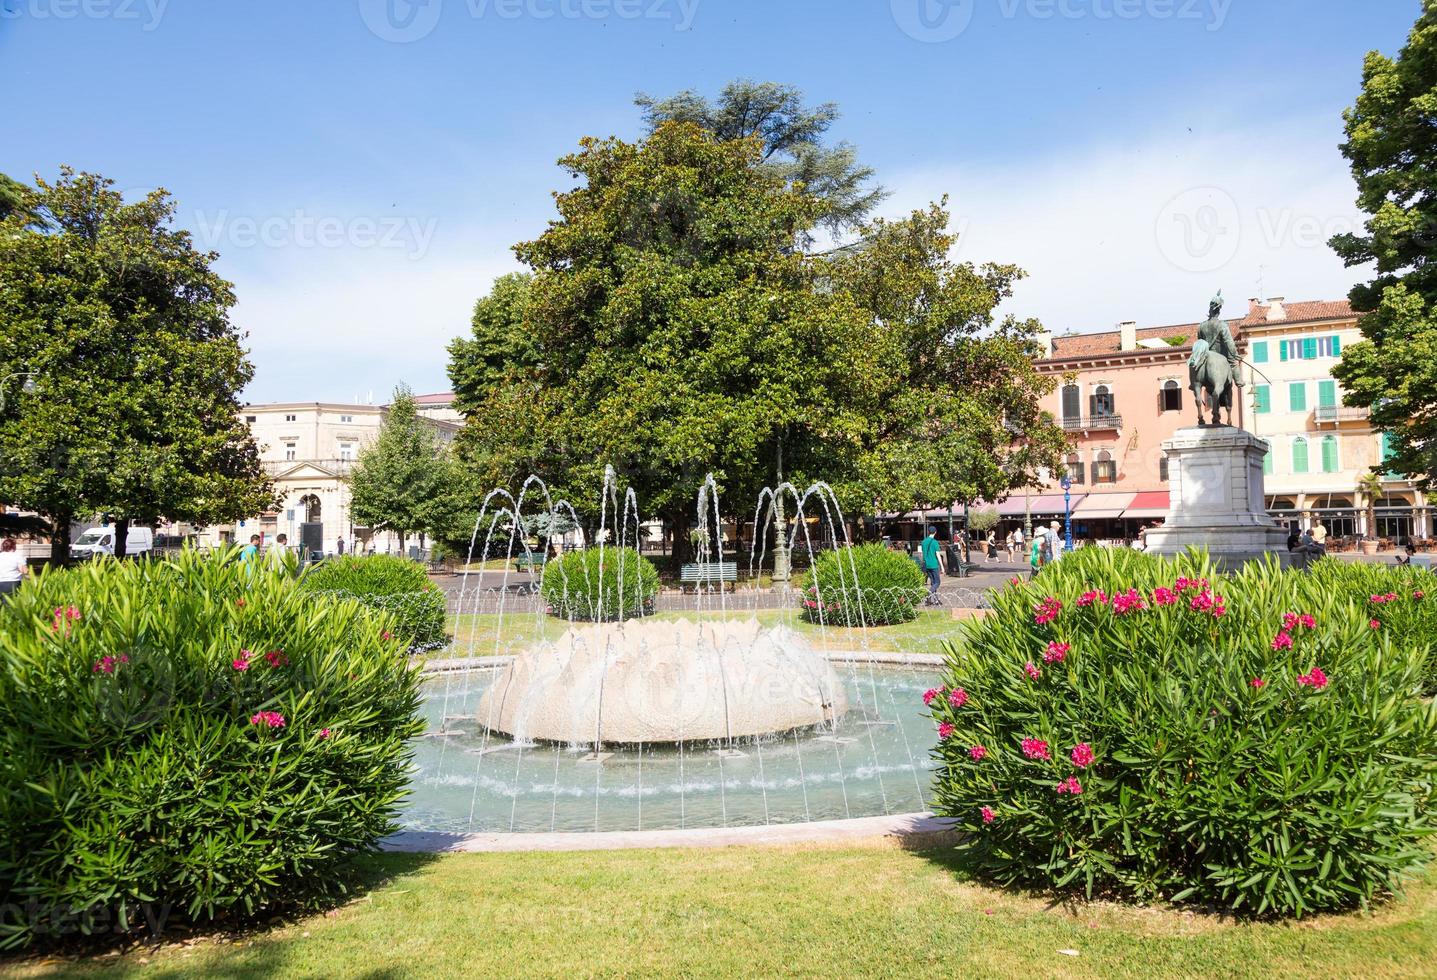 veronese, Italia - il Fontana di Alpi, collocato nel piazza reggiseno giardino. foto